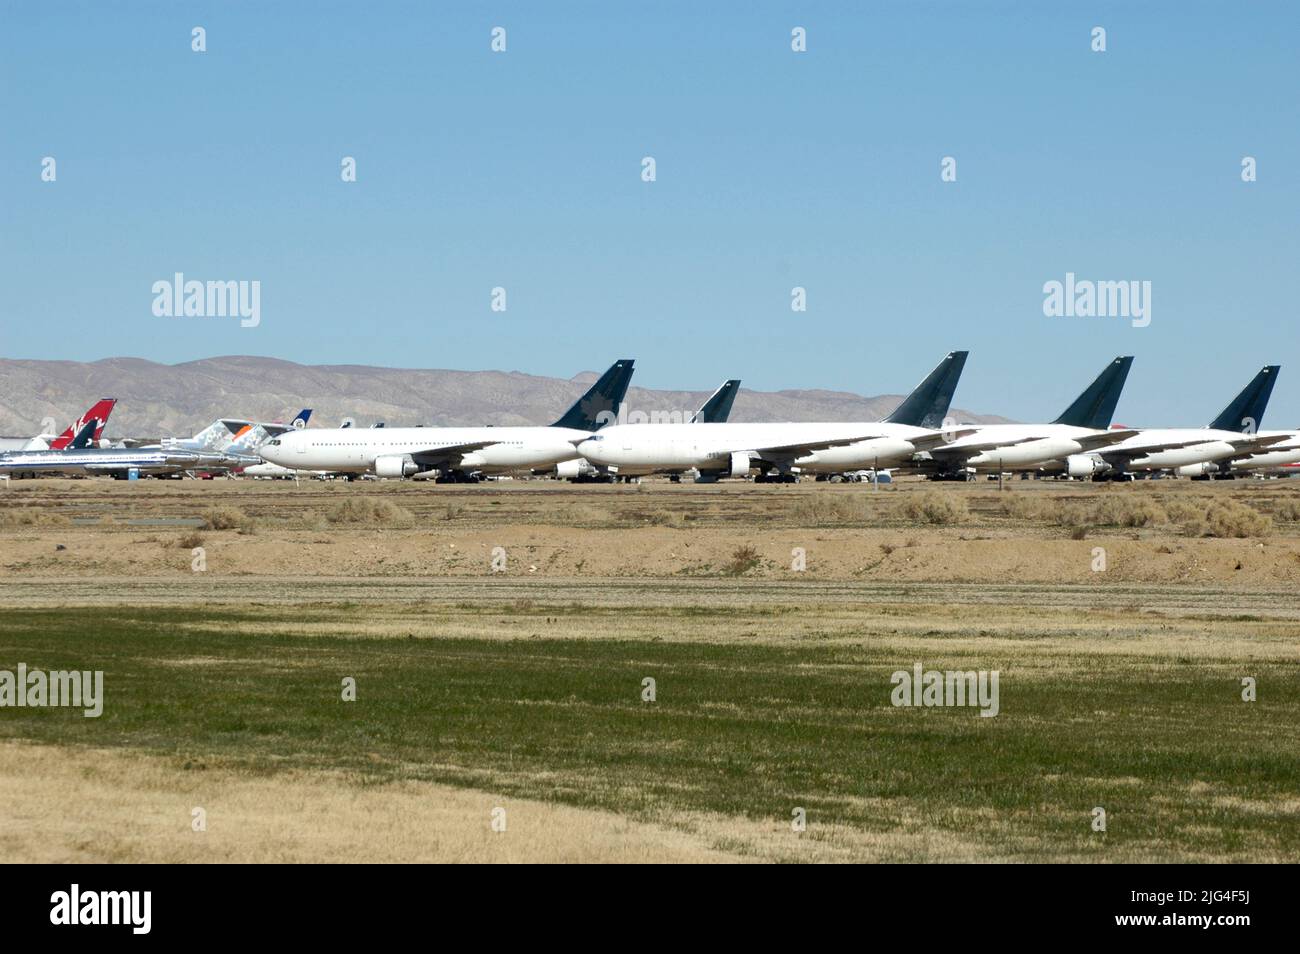 Les avions de ligne de haute époque garés à l'aéroport de Mojave en Californie en attente d'être réparés et remis à neuf pour être réutilisés comme fret et autres Banque D'Images